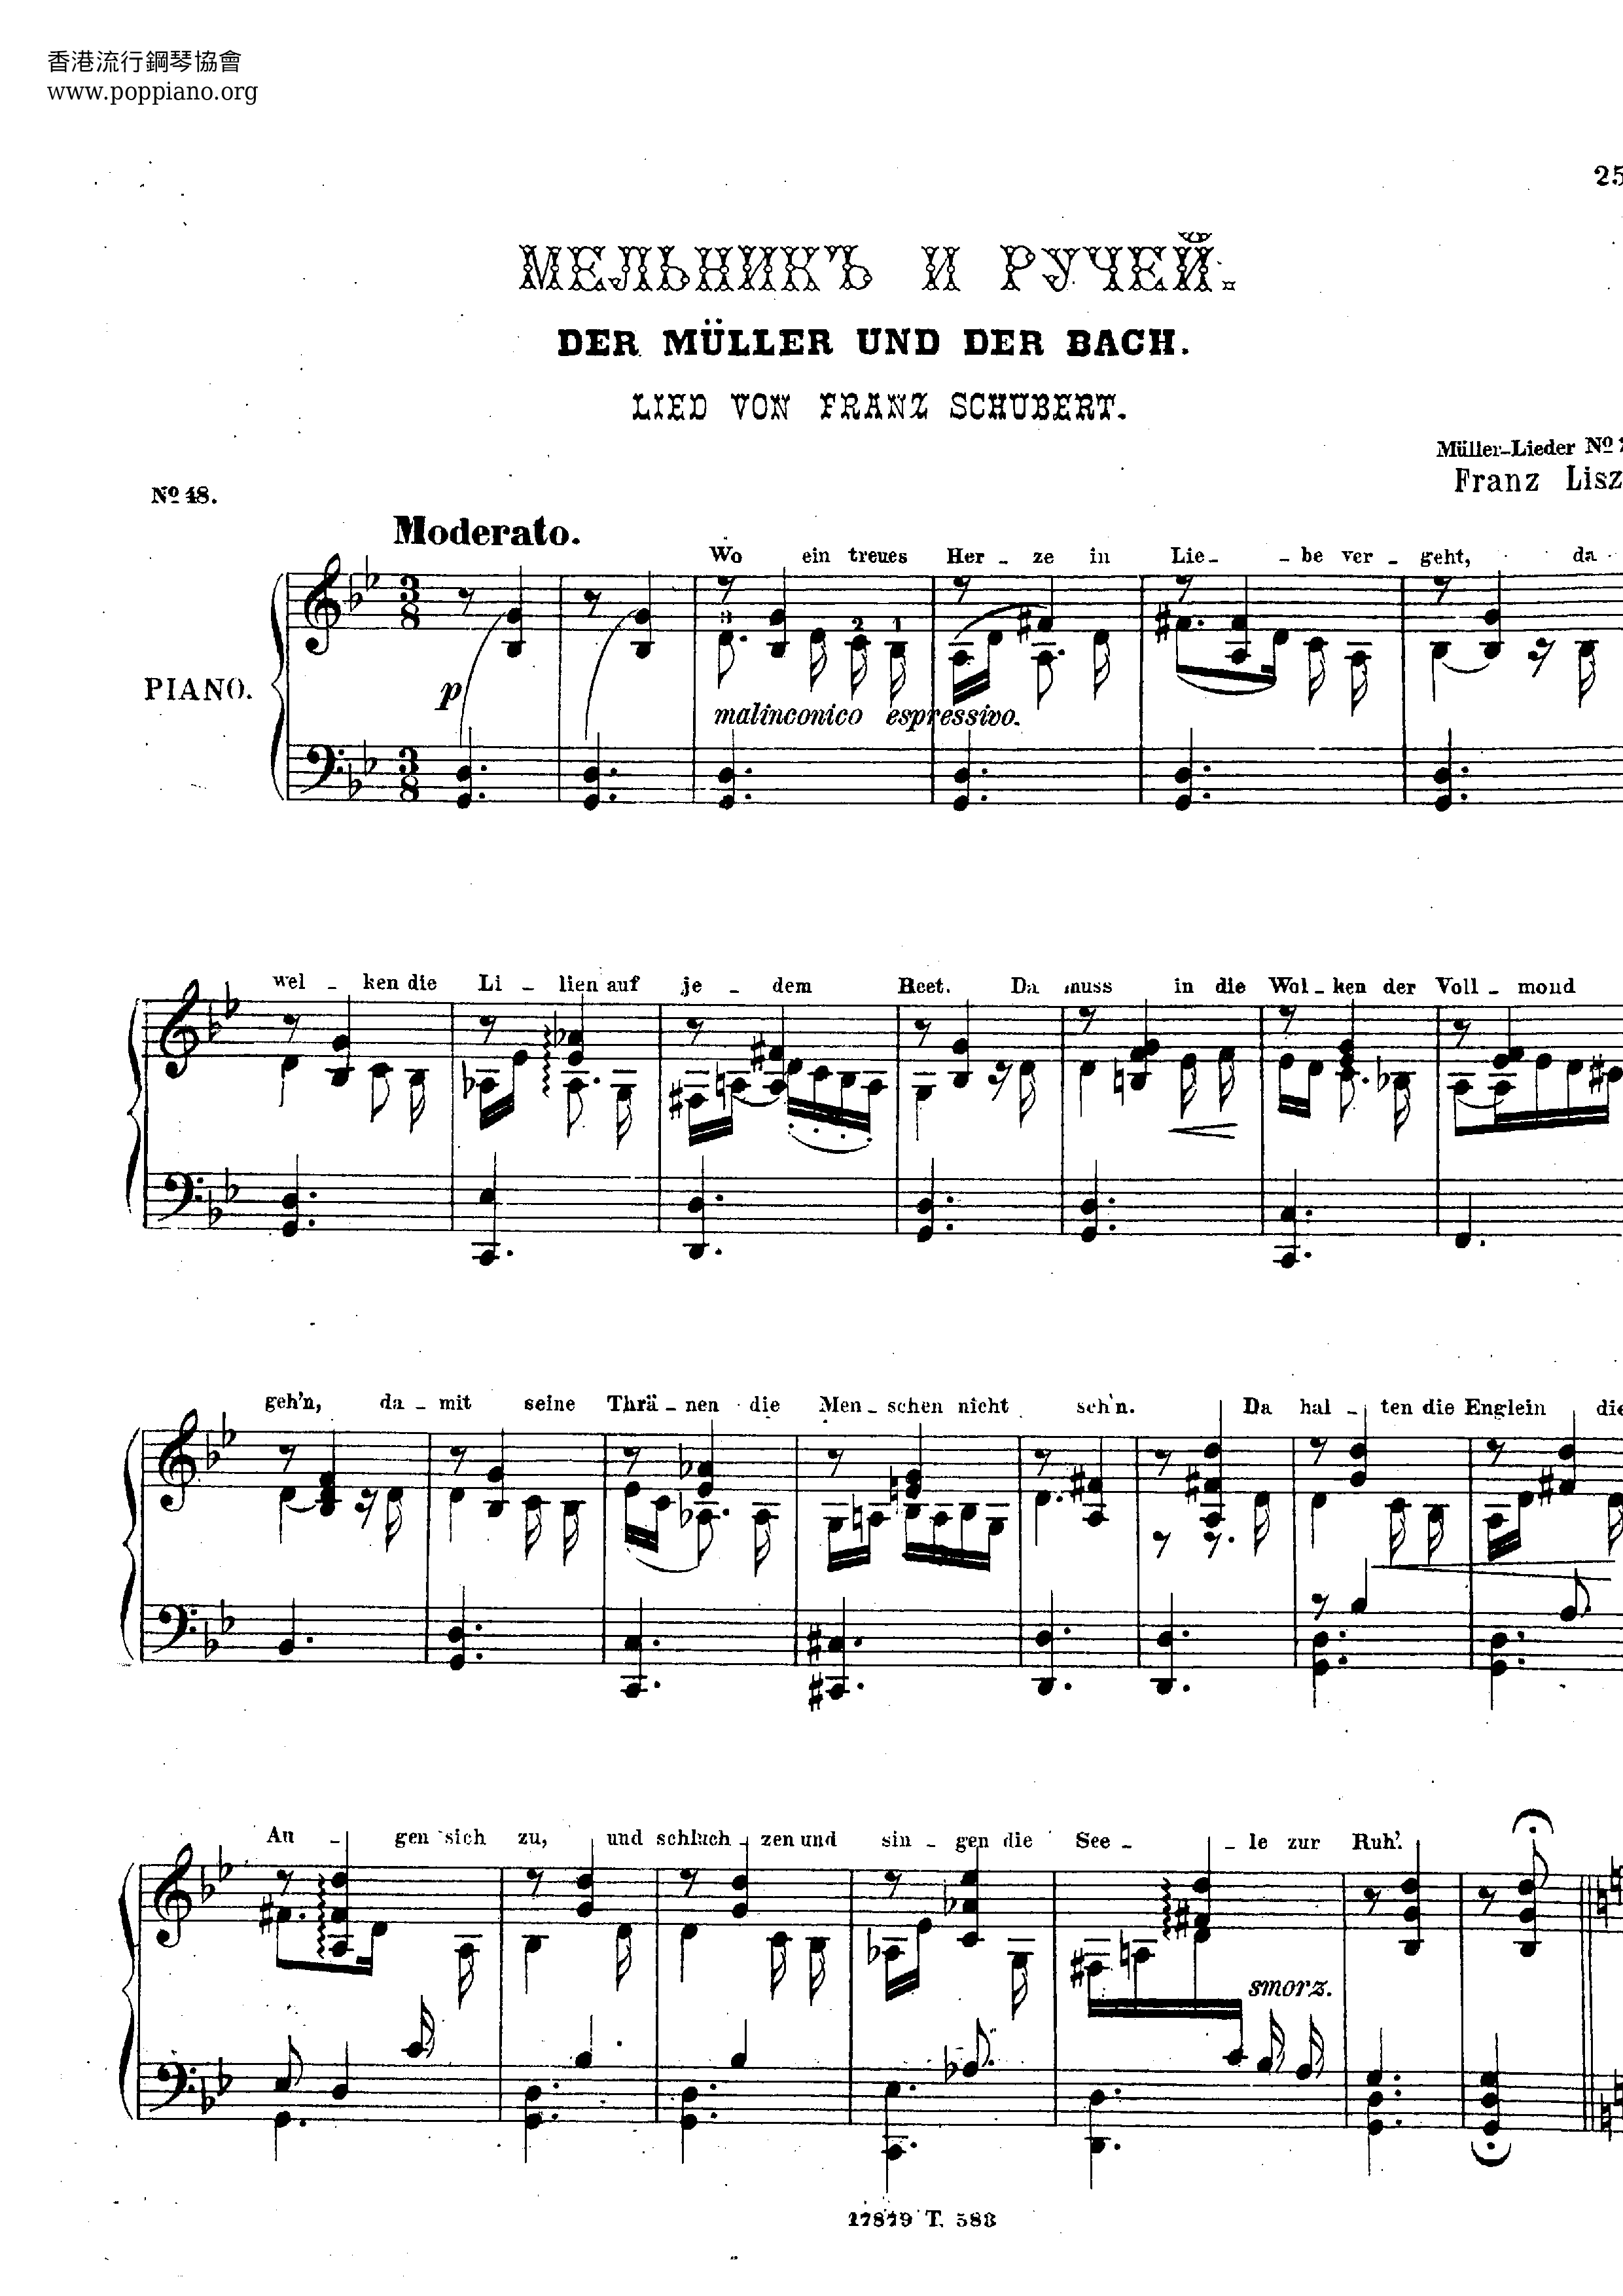 Der Mueller Der Bach Score